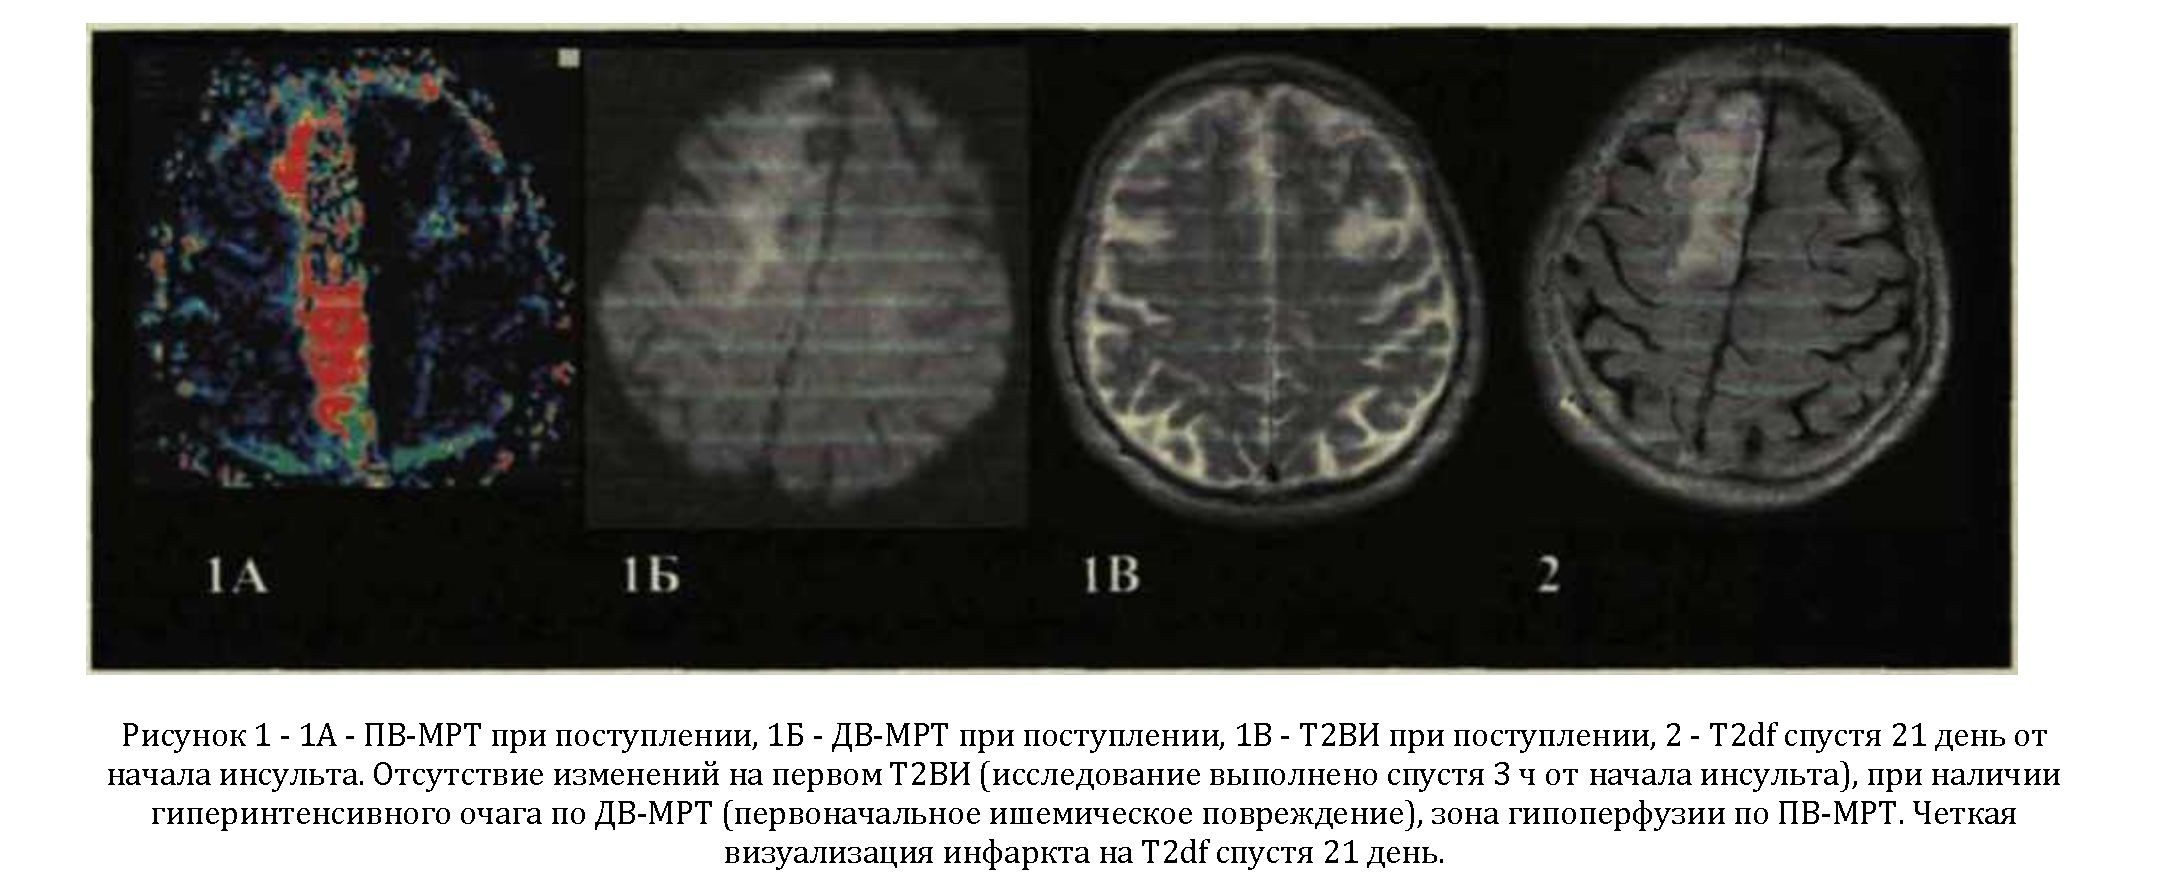 Клинико-нейровизуализационная картина ишемического инсульта в остром периоде